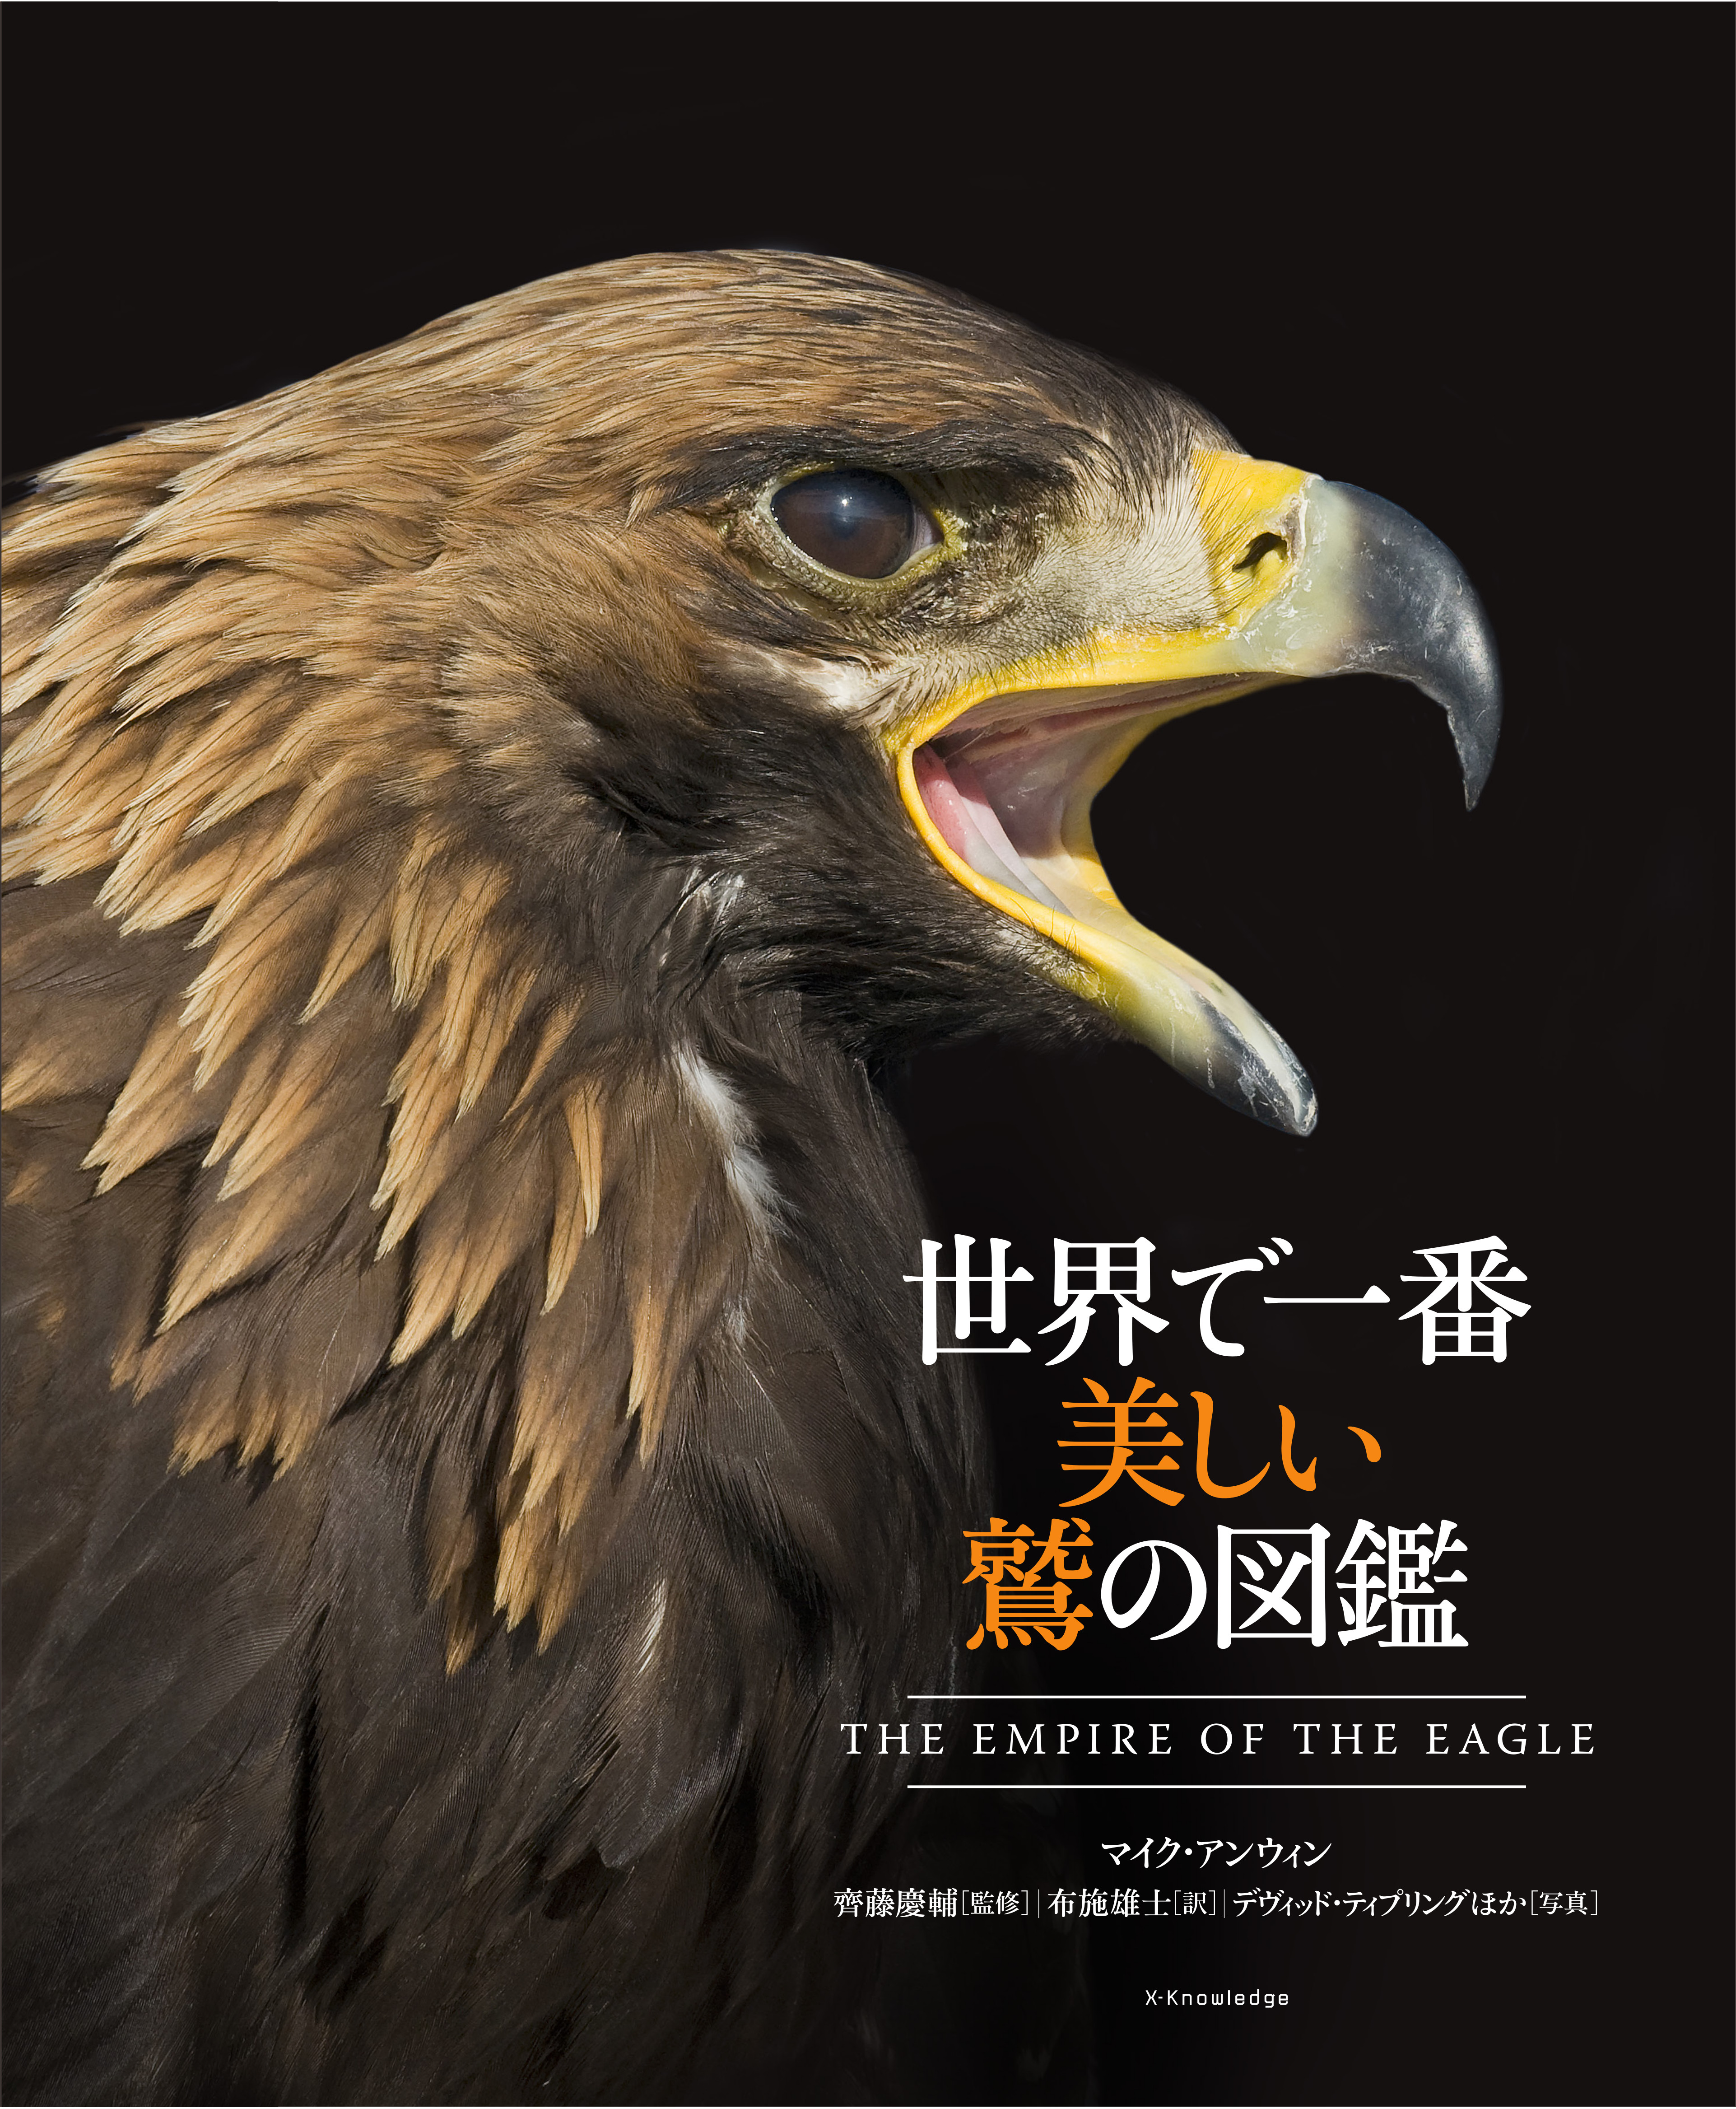 X Knowledge 世界で一番美しい鷲の図鑑